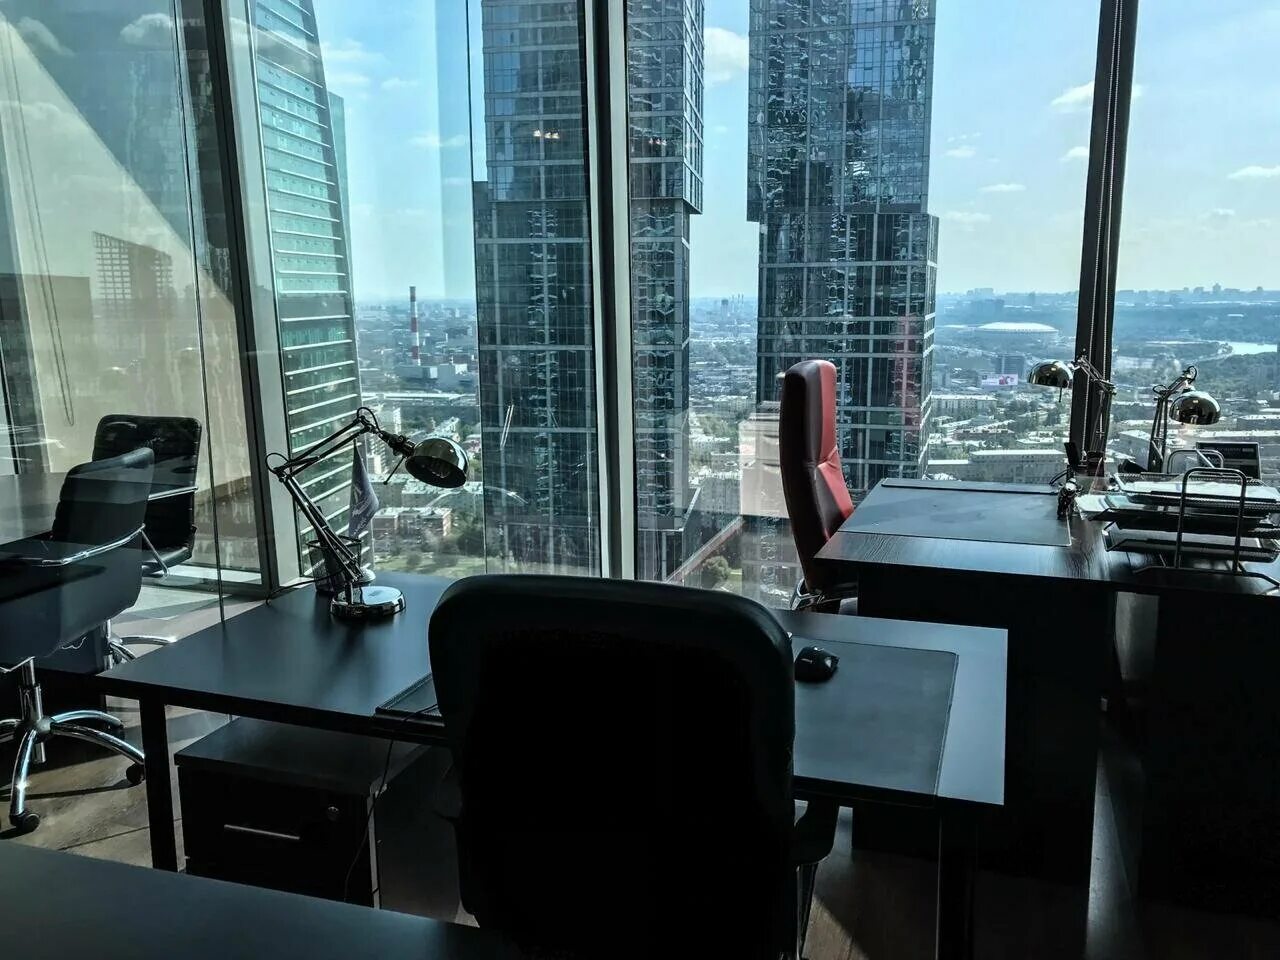 Офис в москва сити. Офис Москва Сити. Кабинет с панорамными окнами с видом на город. Москва Сити вид из квартиры. Москва Сити VIP офис.